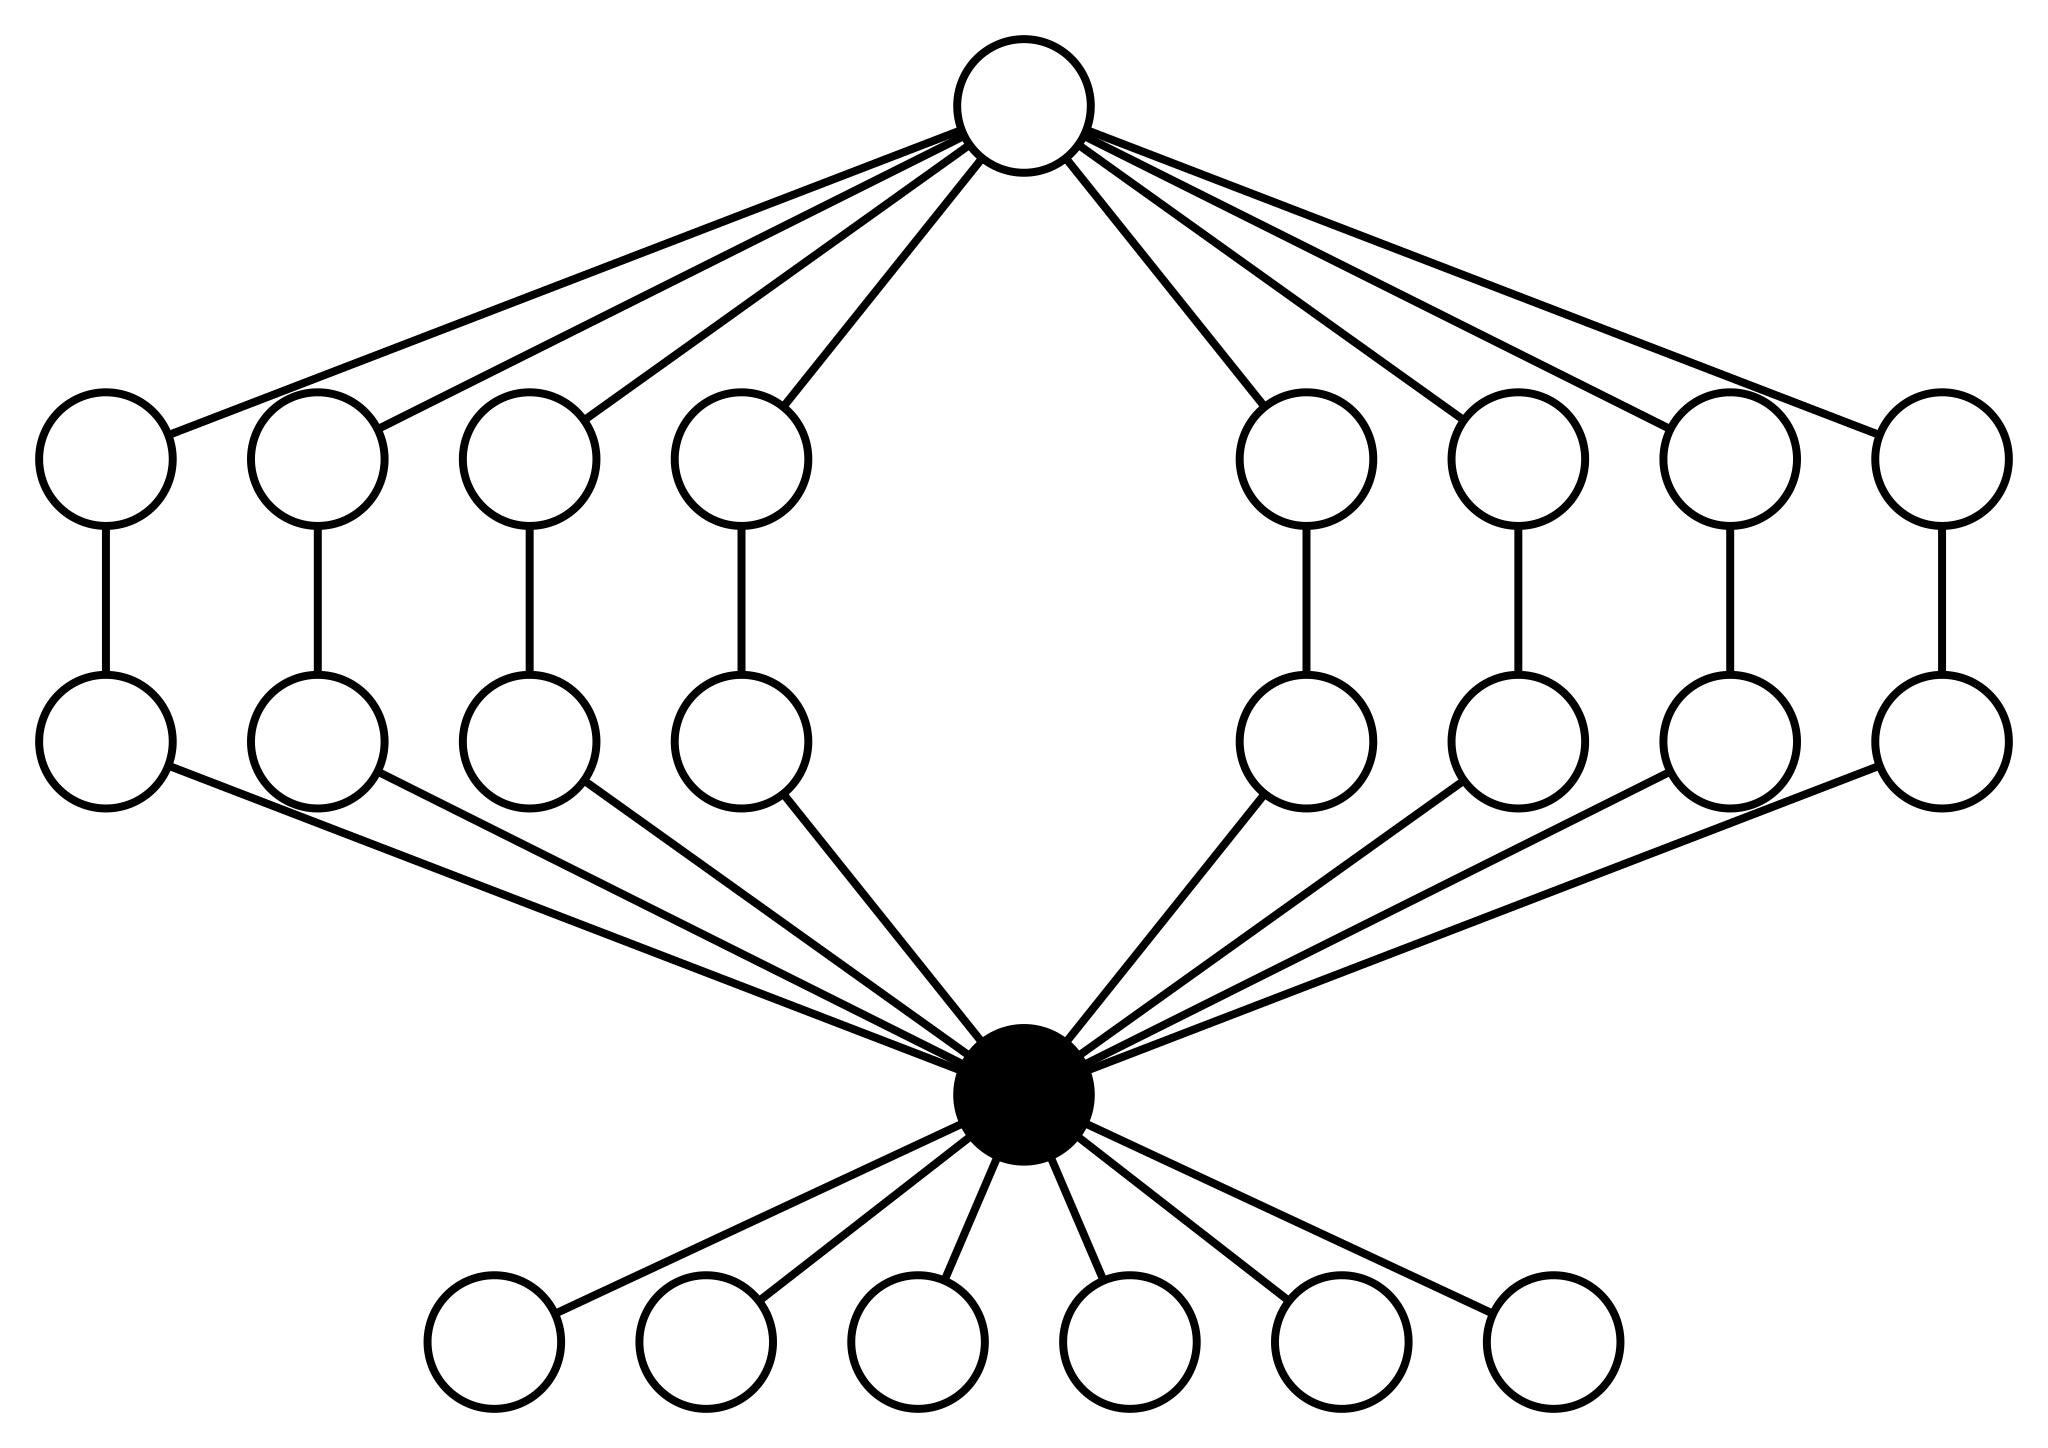 Пространство циклов графа